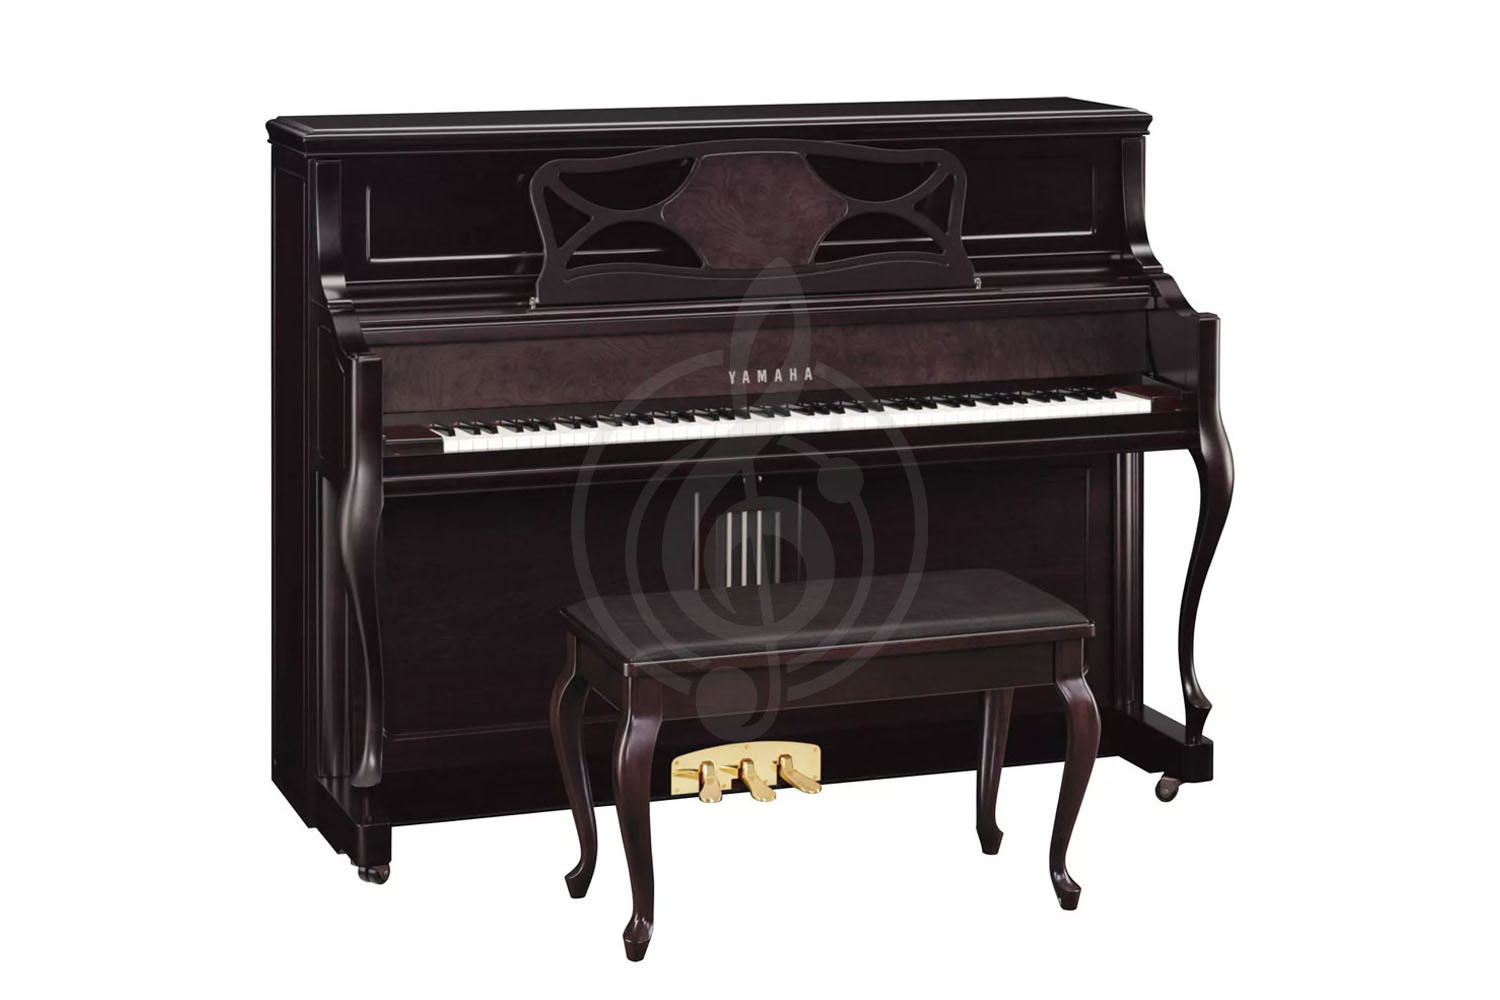 Акустическое пианино Пианино Yamaha Yamaha M2SDW - пианино 110см, консольного типа, цвет тёмный орех, сатинированное, с банкеткой M2SDW//LZ.WITHBENCH - фото 1